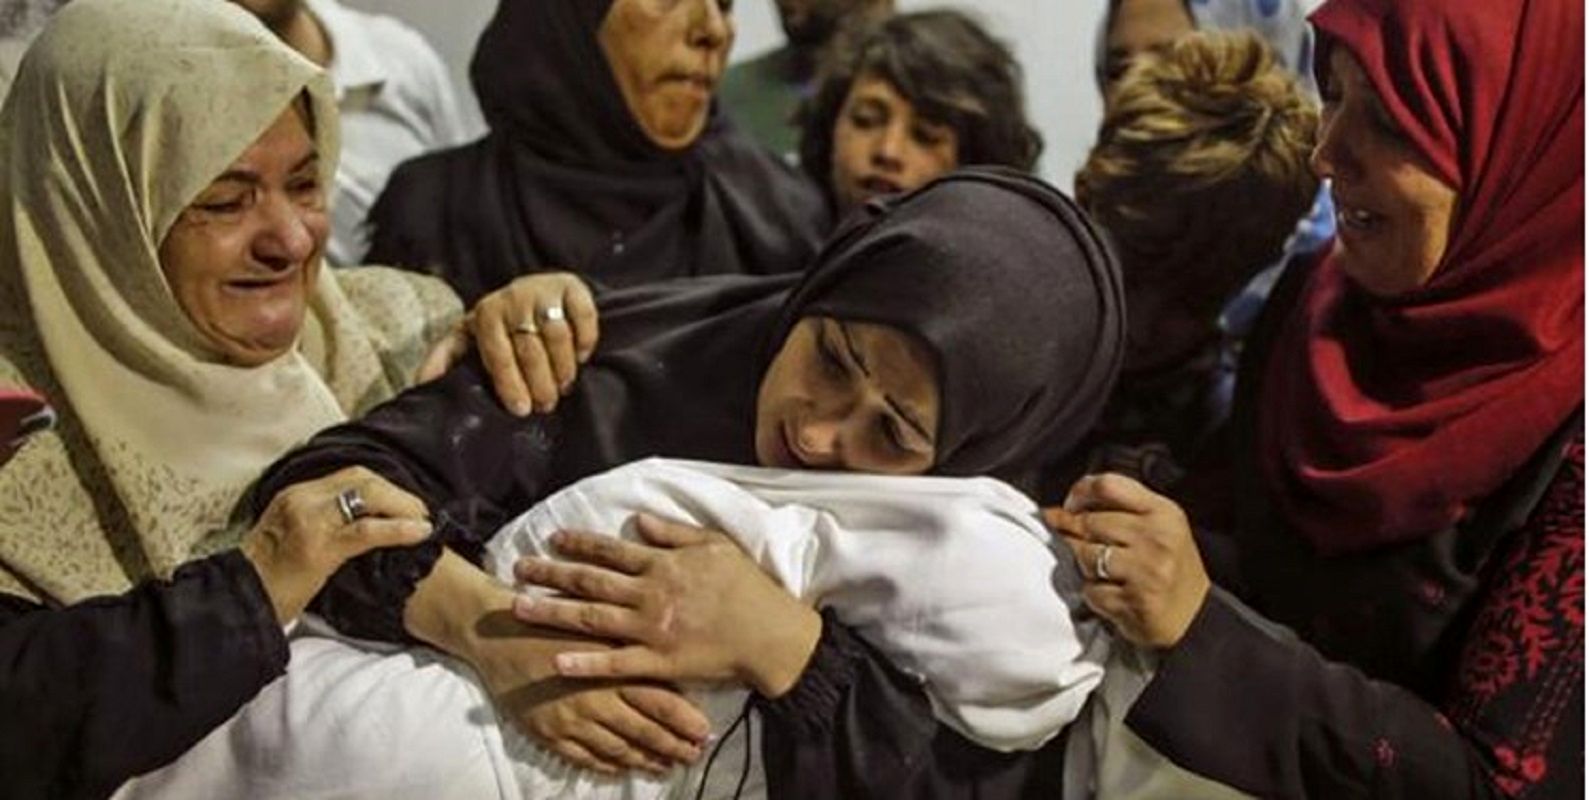 المالکی: زنان و کودکان، قربانیان اصلی کشتار جمعی در غزه  هستند